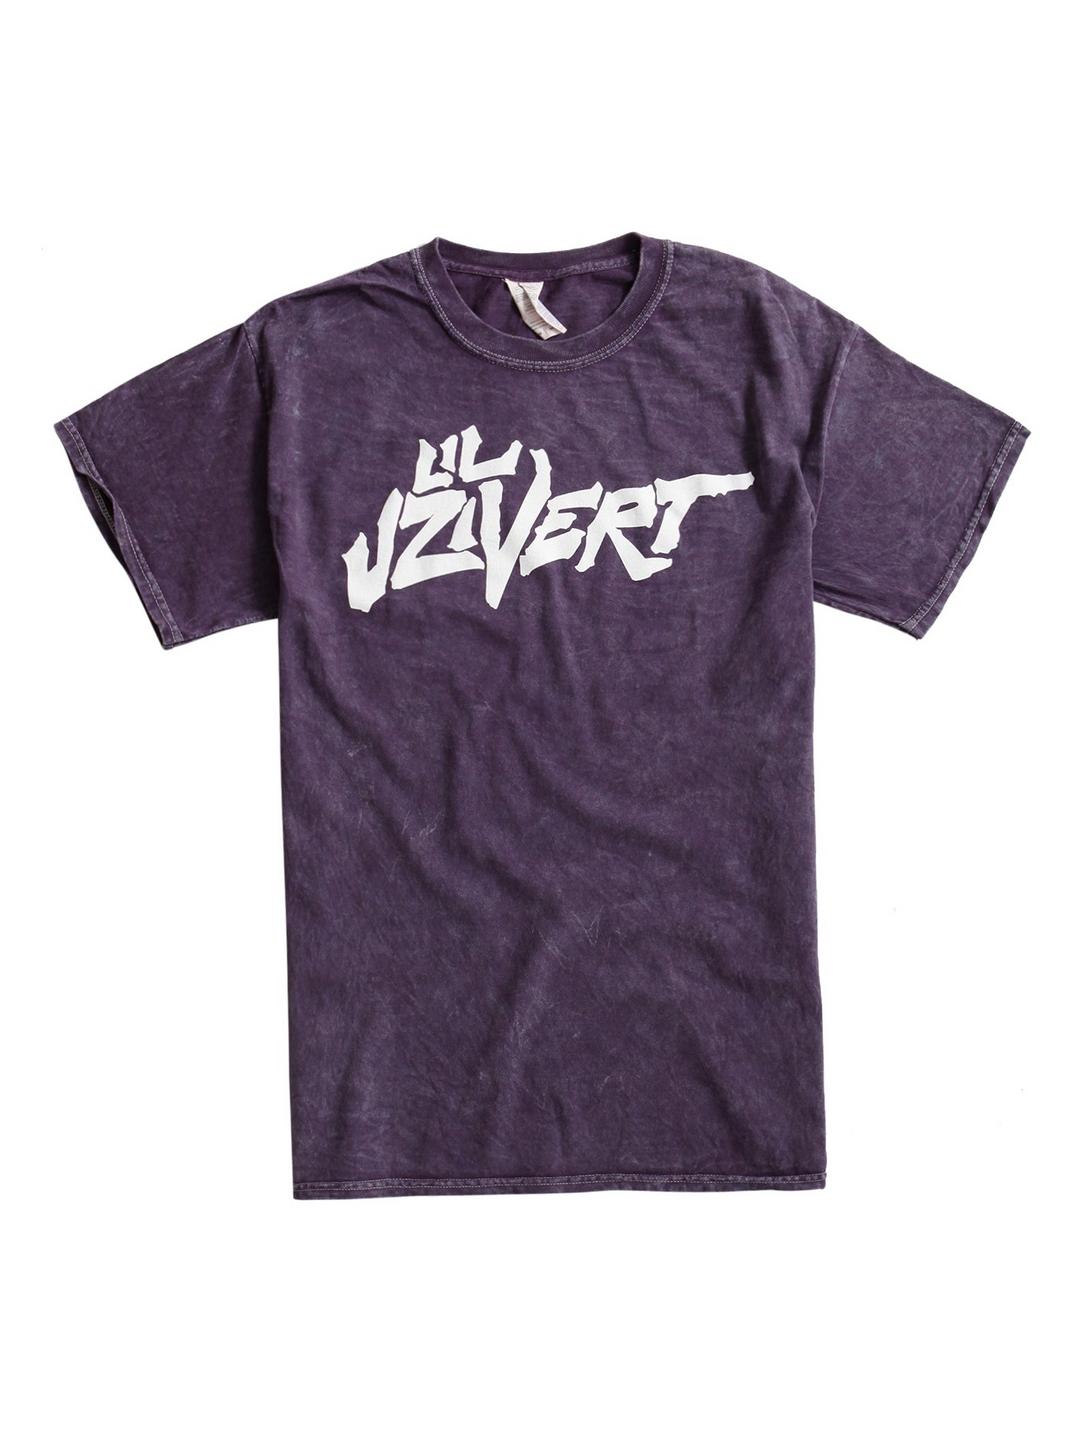 Lil Uzi Vert Logo Mineral Wash T-Shirt, PURPLE, hi-res